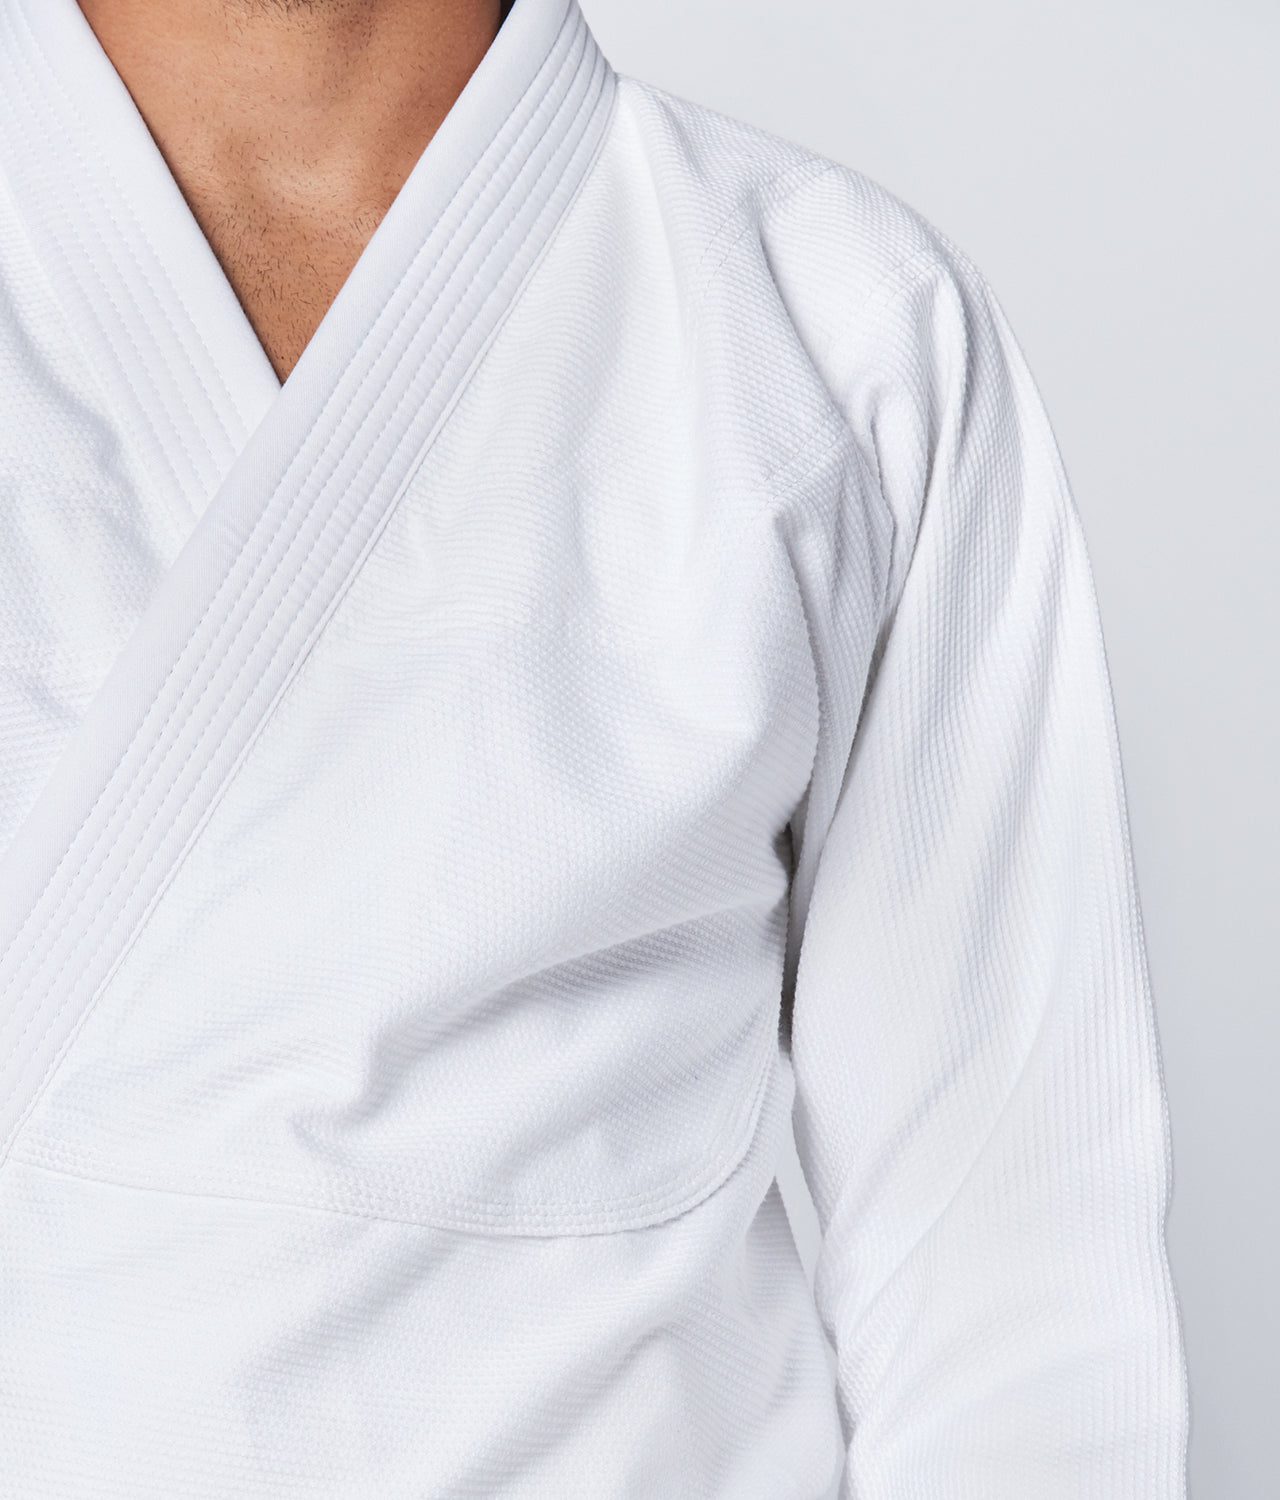 Elite Sports Men's Essential White Brazilian Jiu Jitsu BJJ Gi